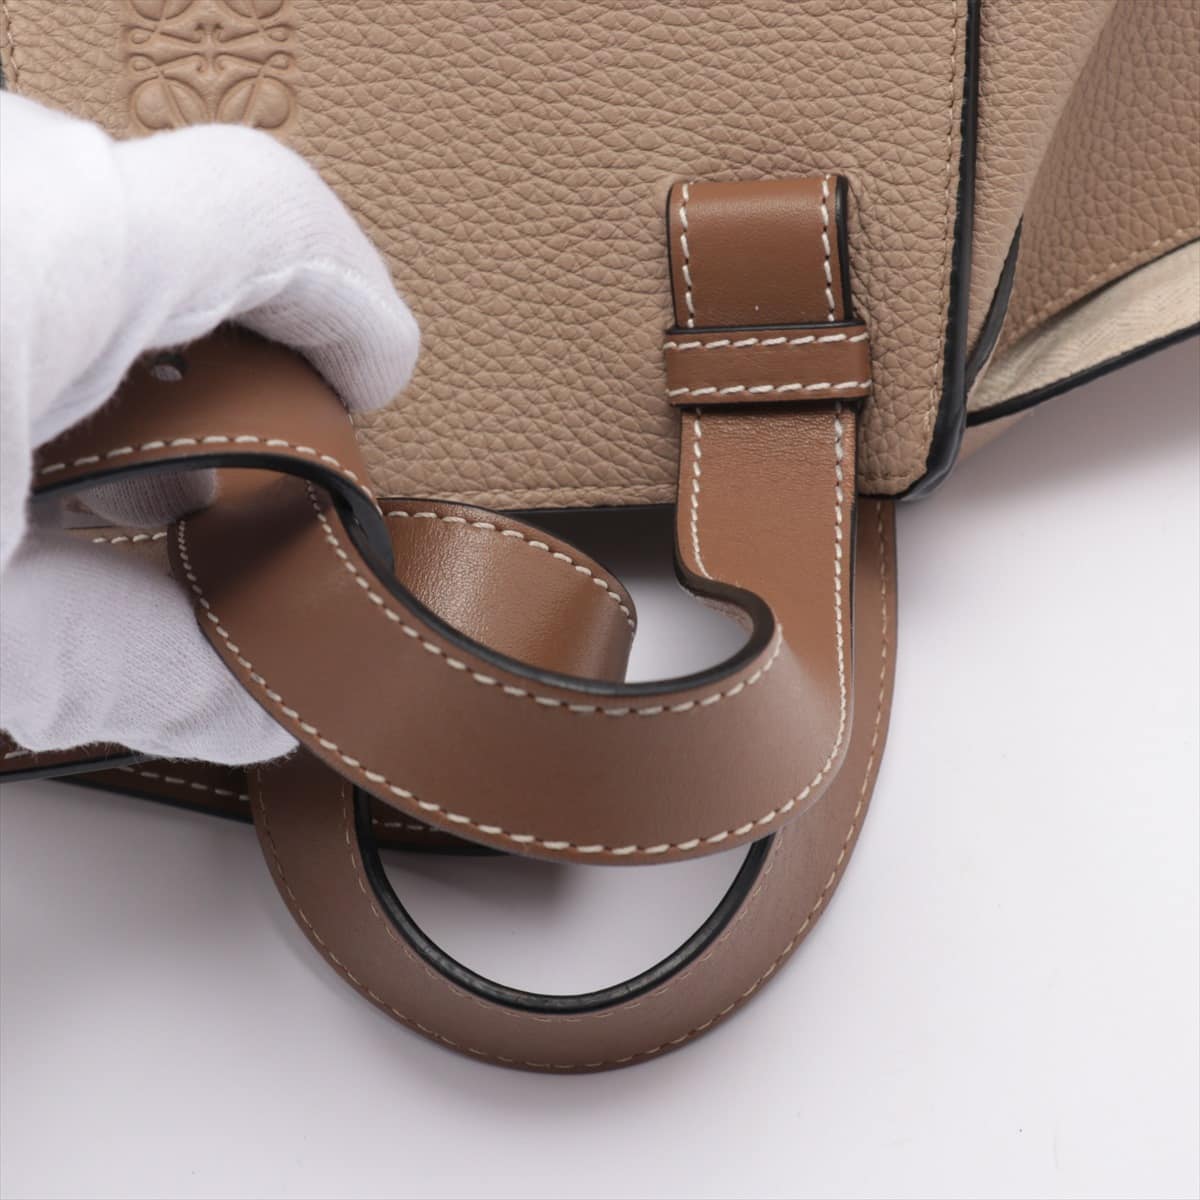 Loewe Hammock Medium Leather 2way shoulder bag Beige